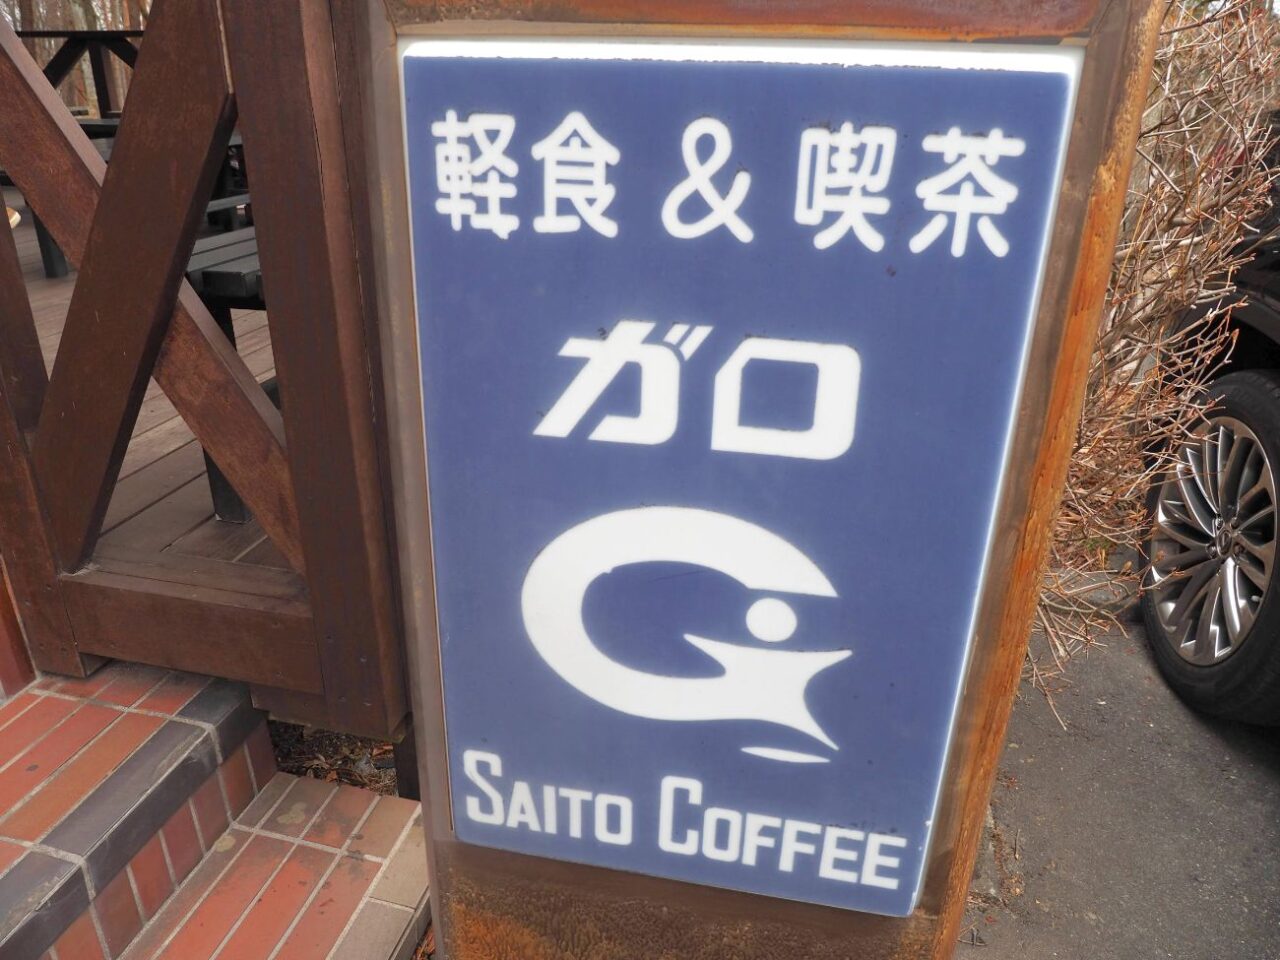 駒ヶ根市の軽食&喫茶「ガロ」